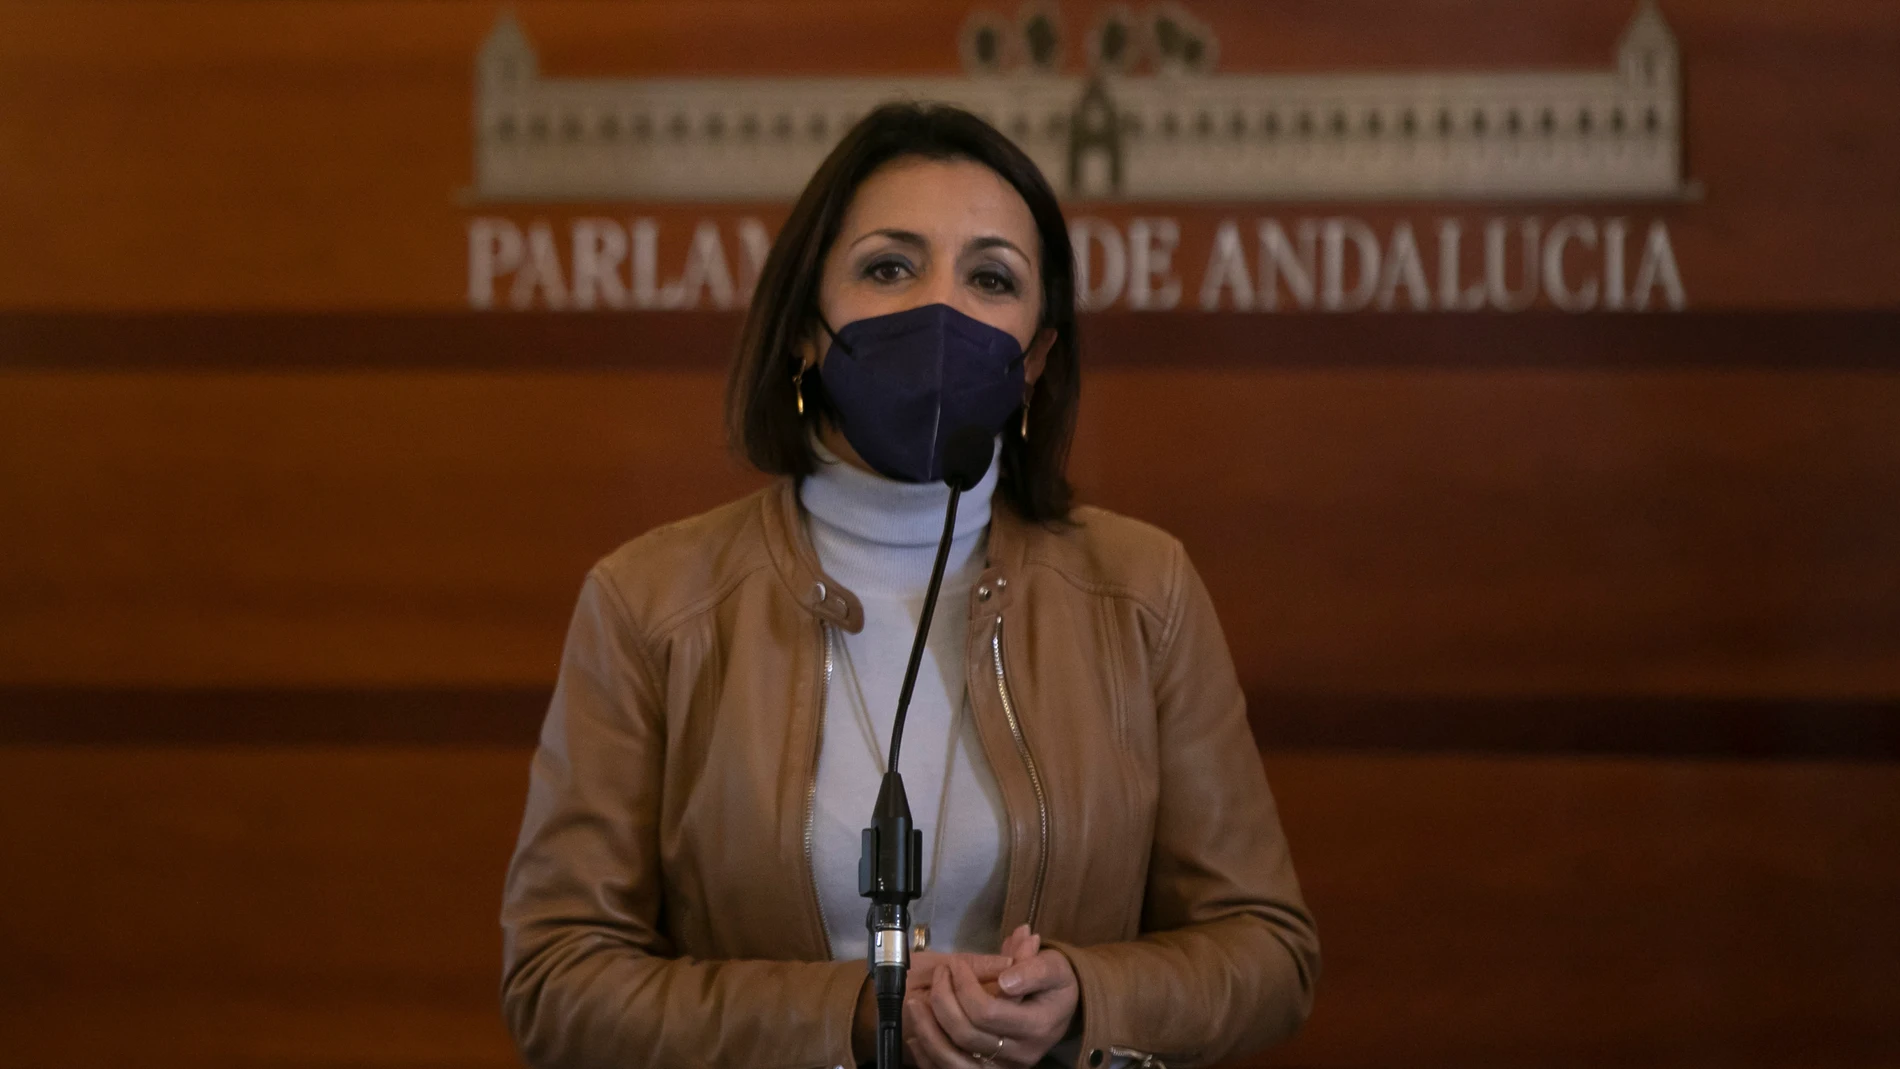 La presidenta del Parlamento de Andalucía, Marta Bosquet, en una imagen de archivo